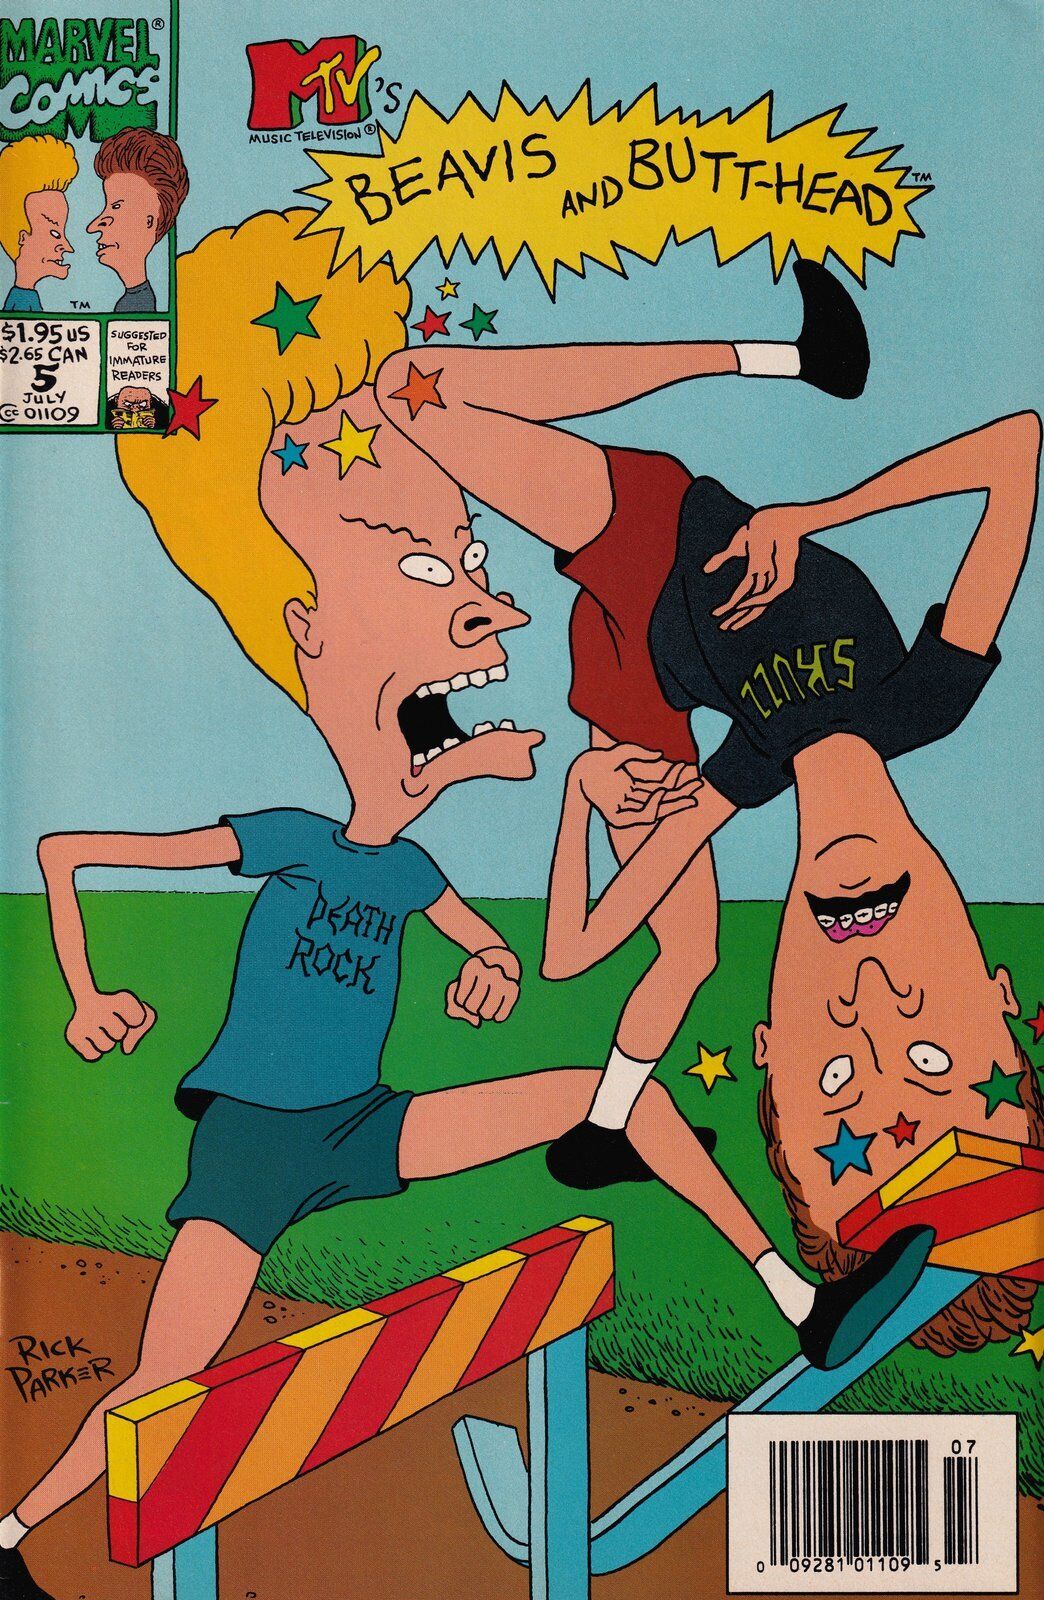 Beavis and Butt-Head #5 Newsstand Cover (1994-1996) Marvel Comics